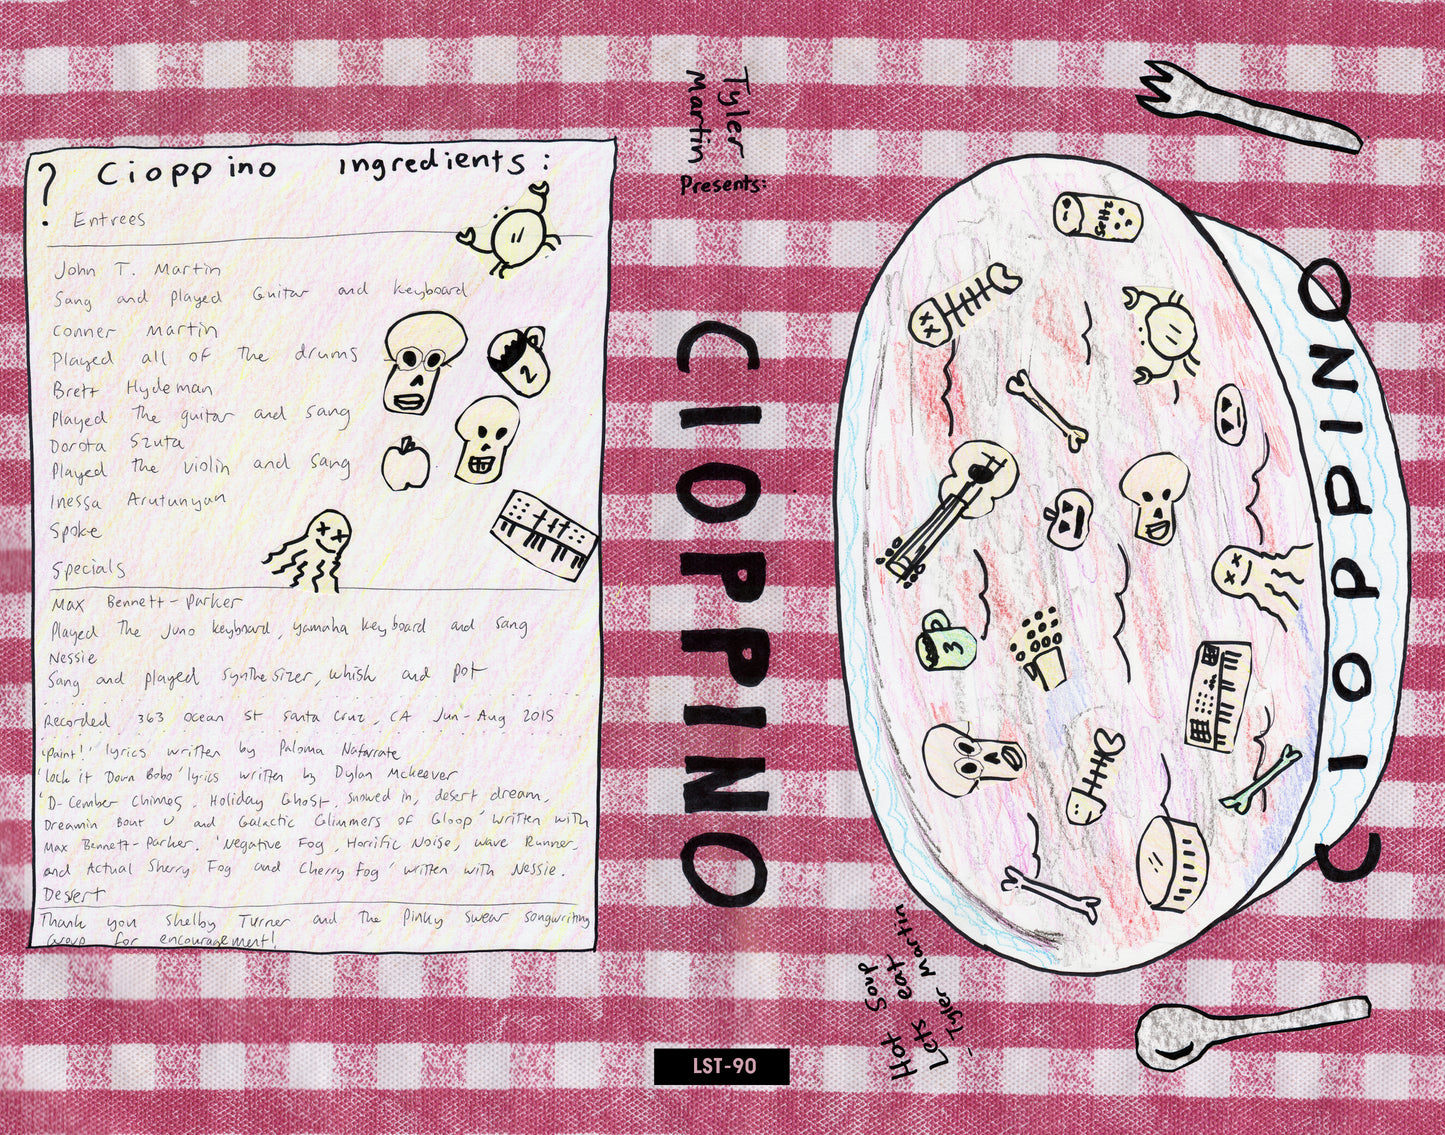 TYLER MARTIN "Cioppino" 4 x cassette tape